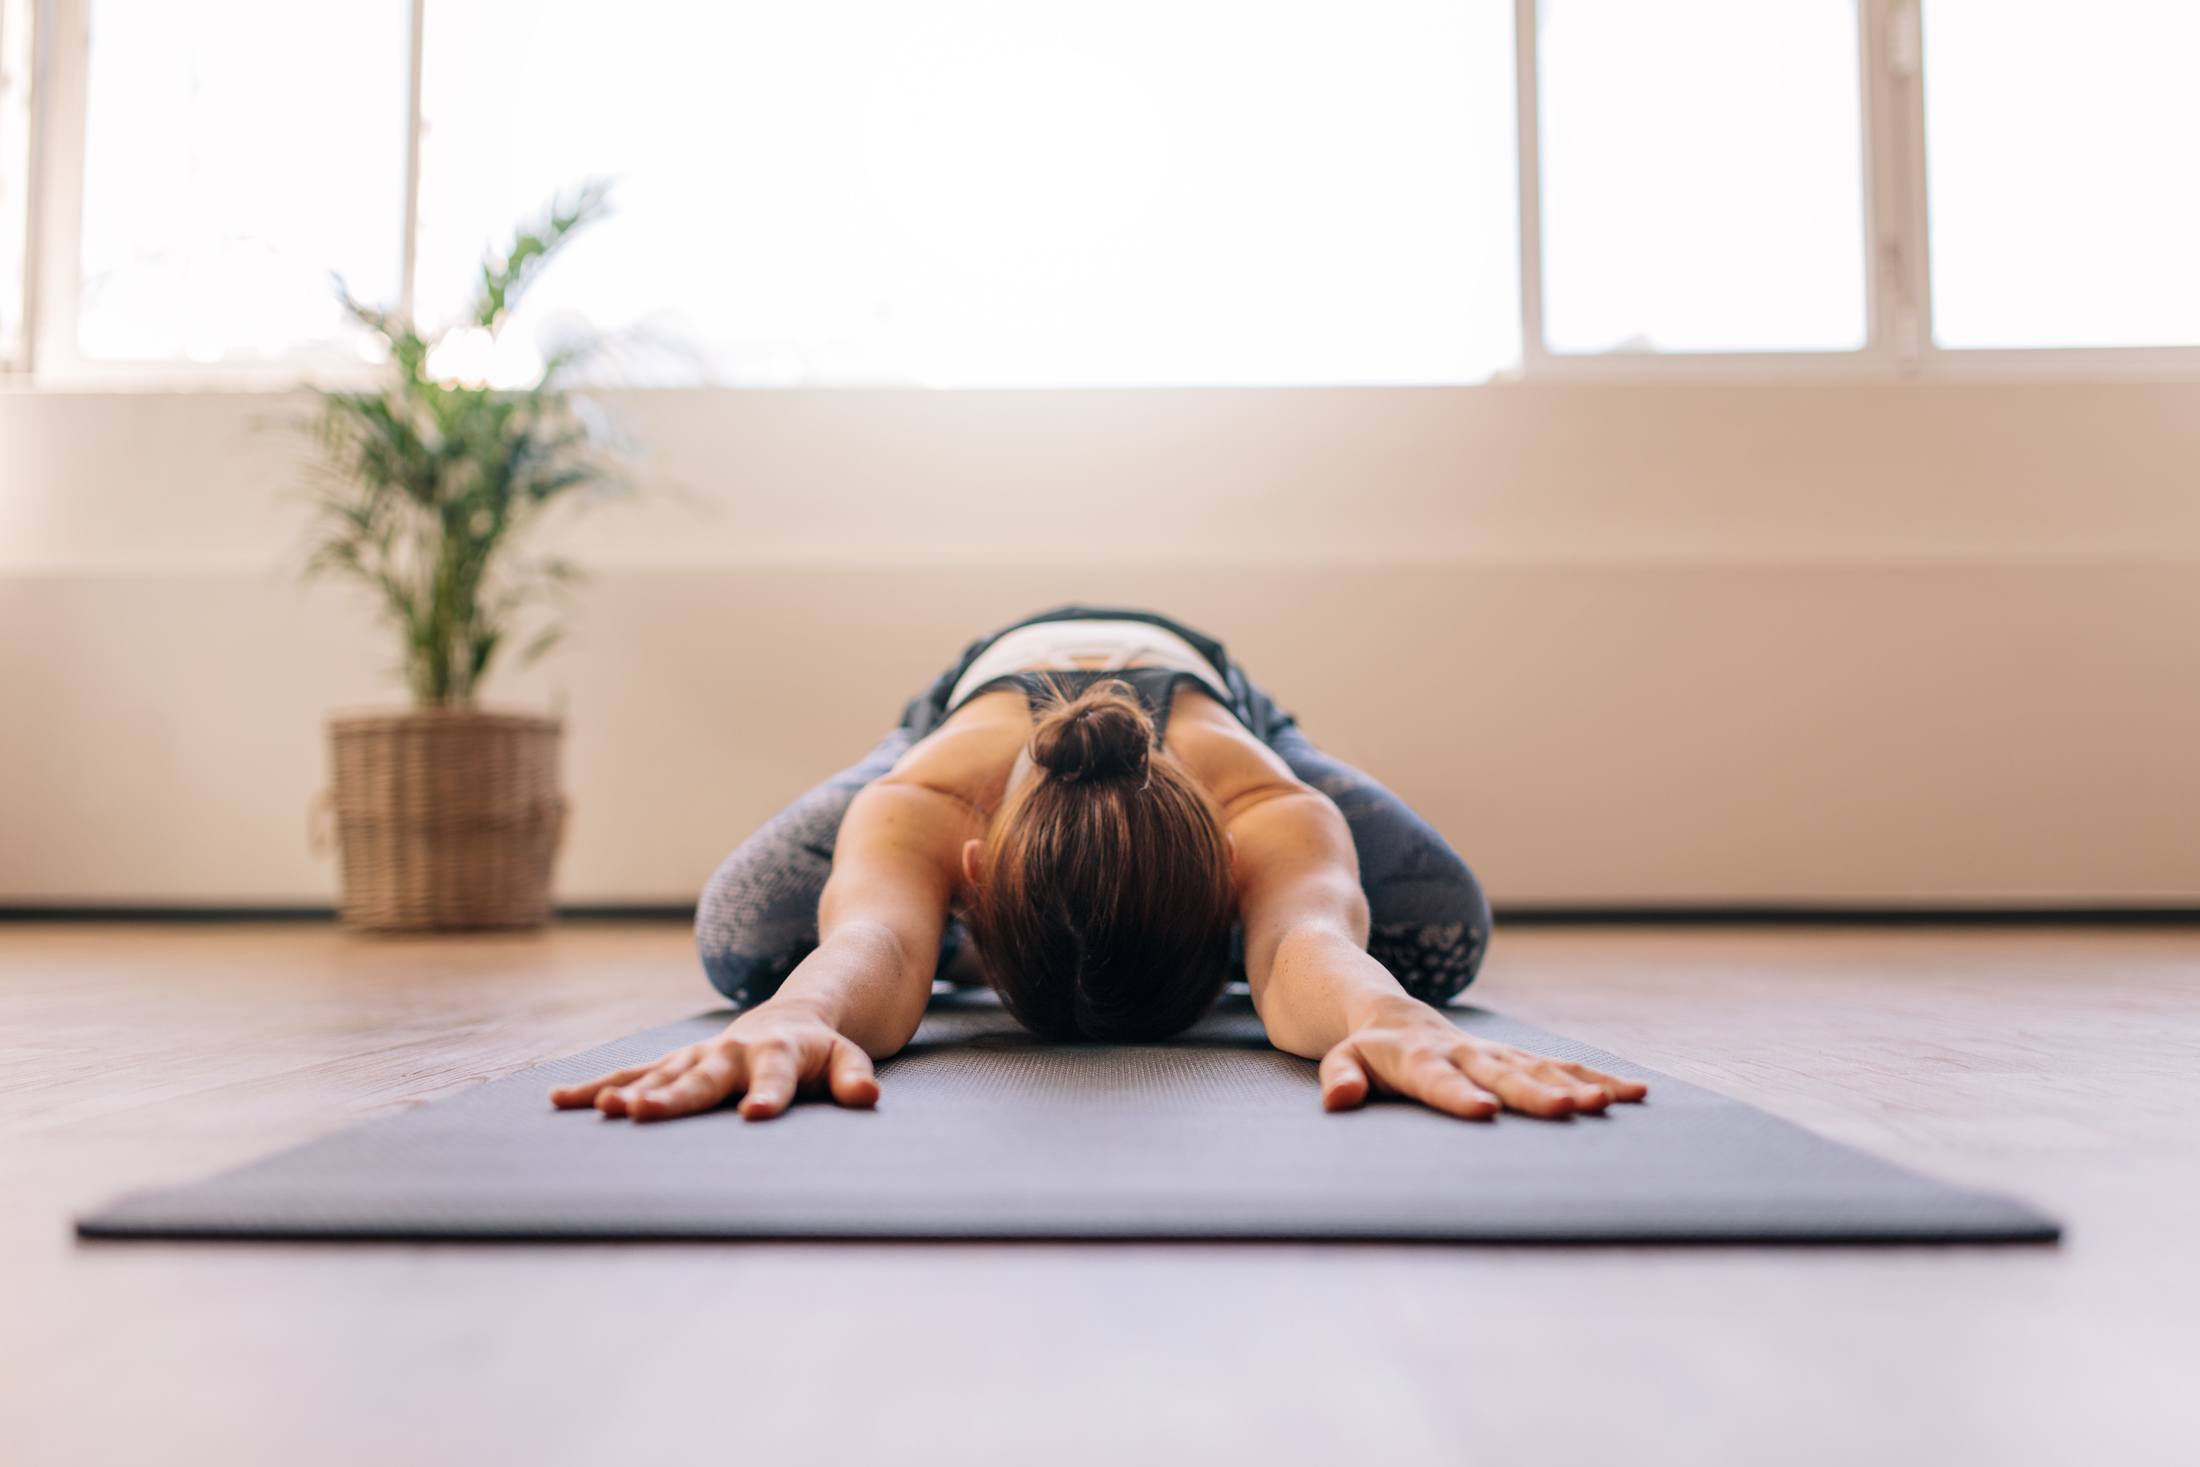 How to Do Happy Baby (Ananda Balasana) in Yoga and Pilates